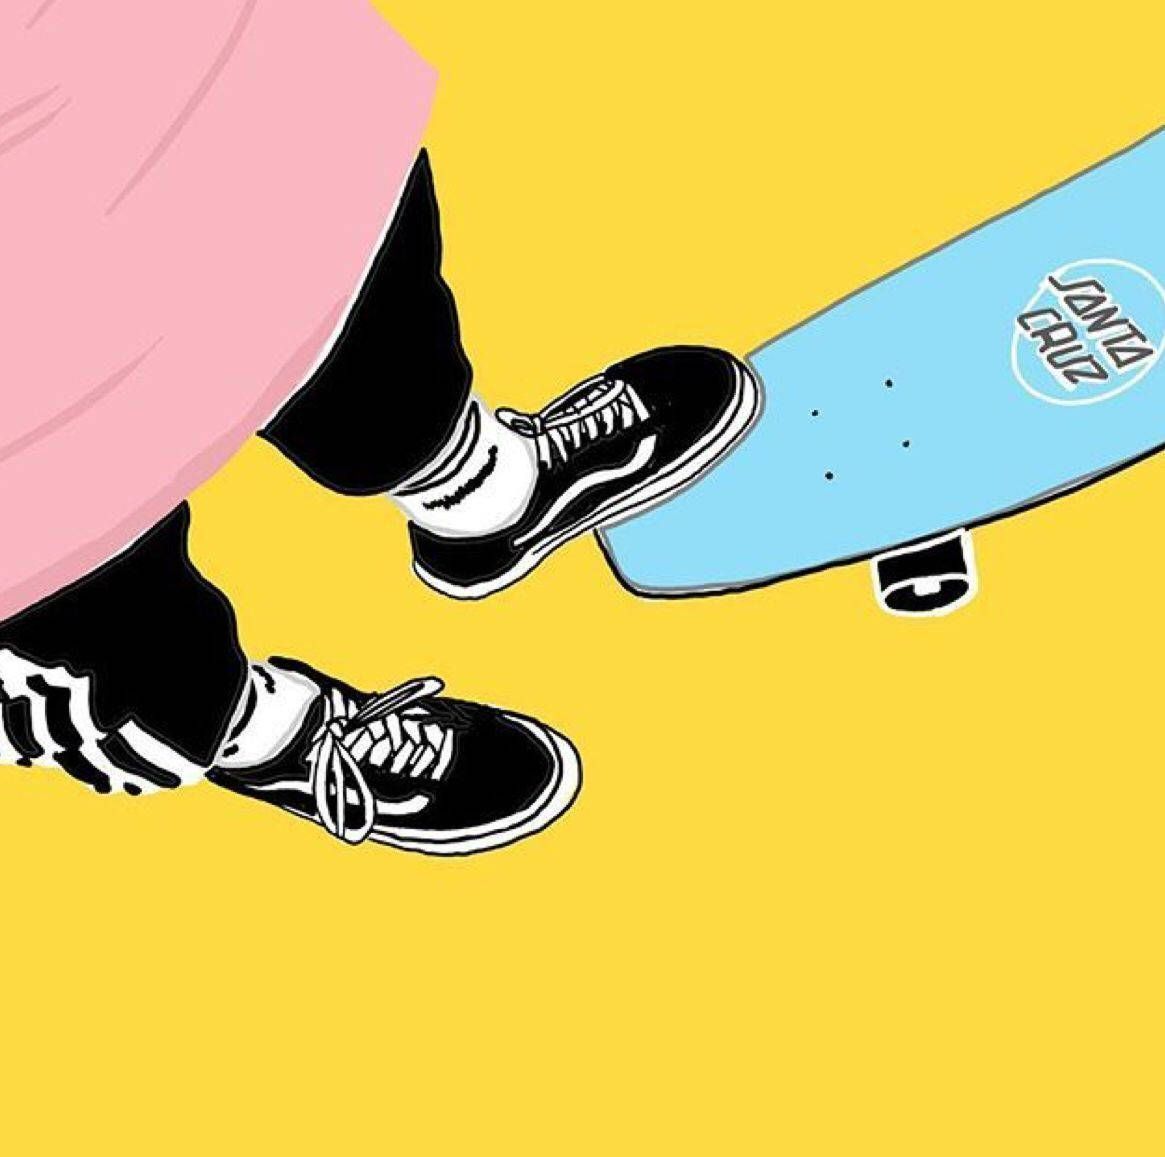 Free Aesthetic Skateboard Wallpaper Downloads, Aesthetic Skateboard Wallpaper for FREE